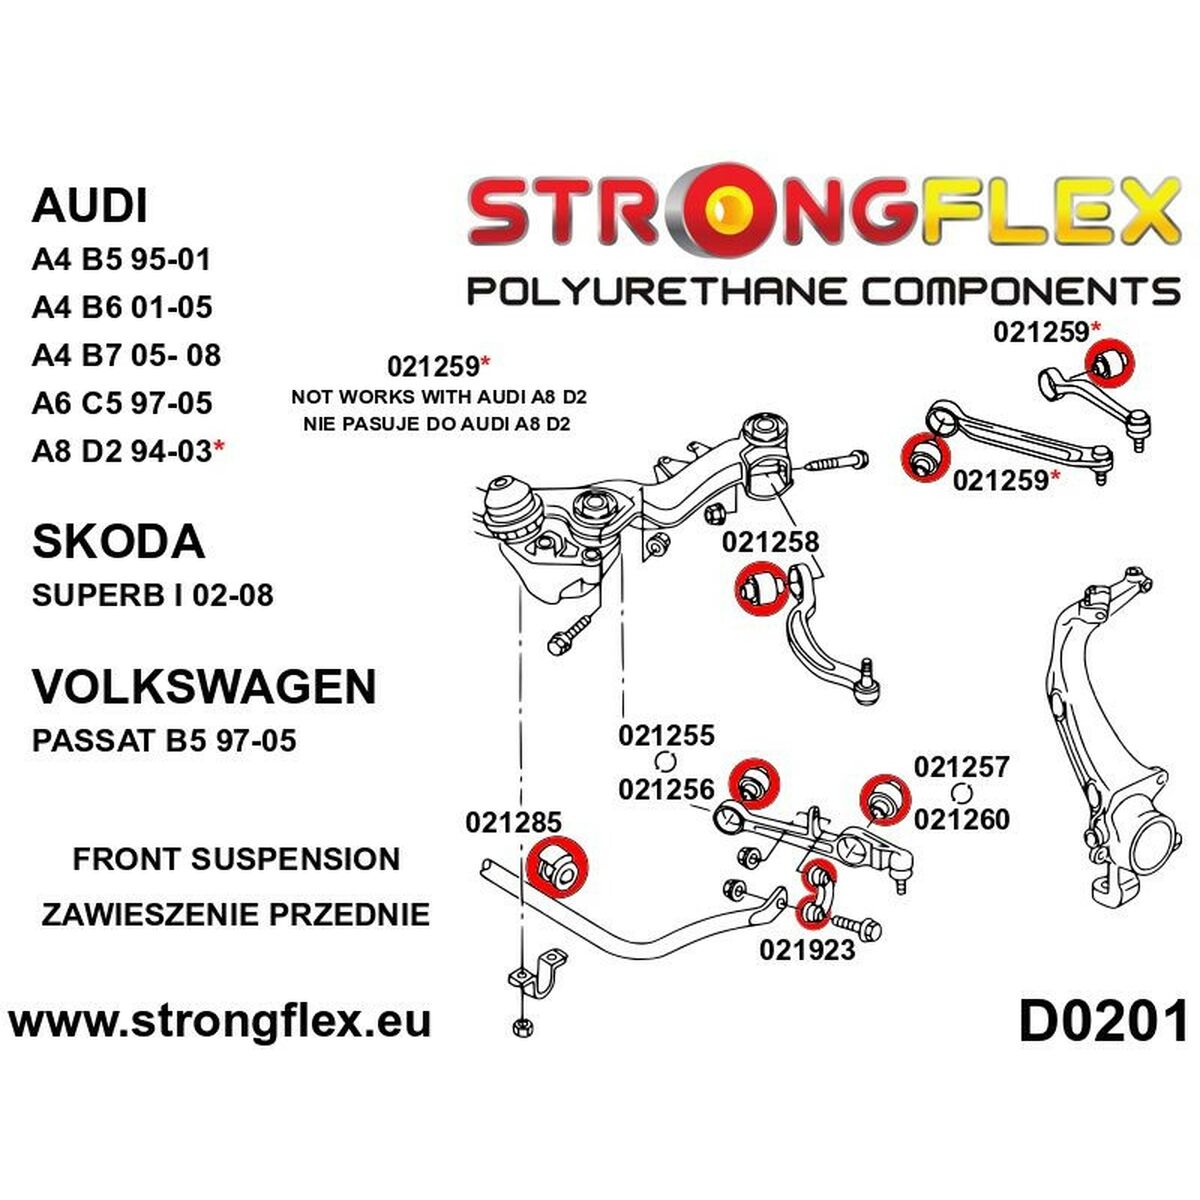 Silentblock Strongflex STF021260AX2 Inferiore Delantera 2 Pezzi